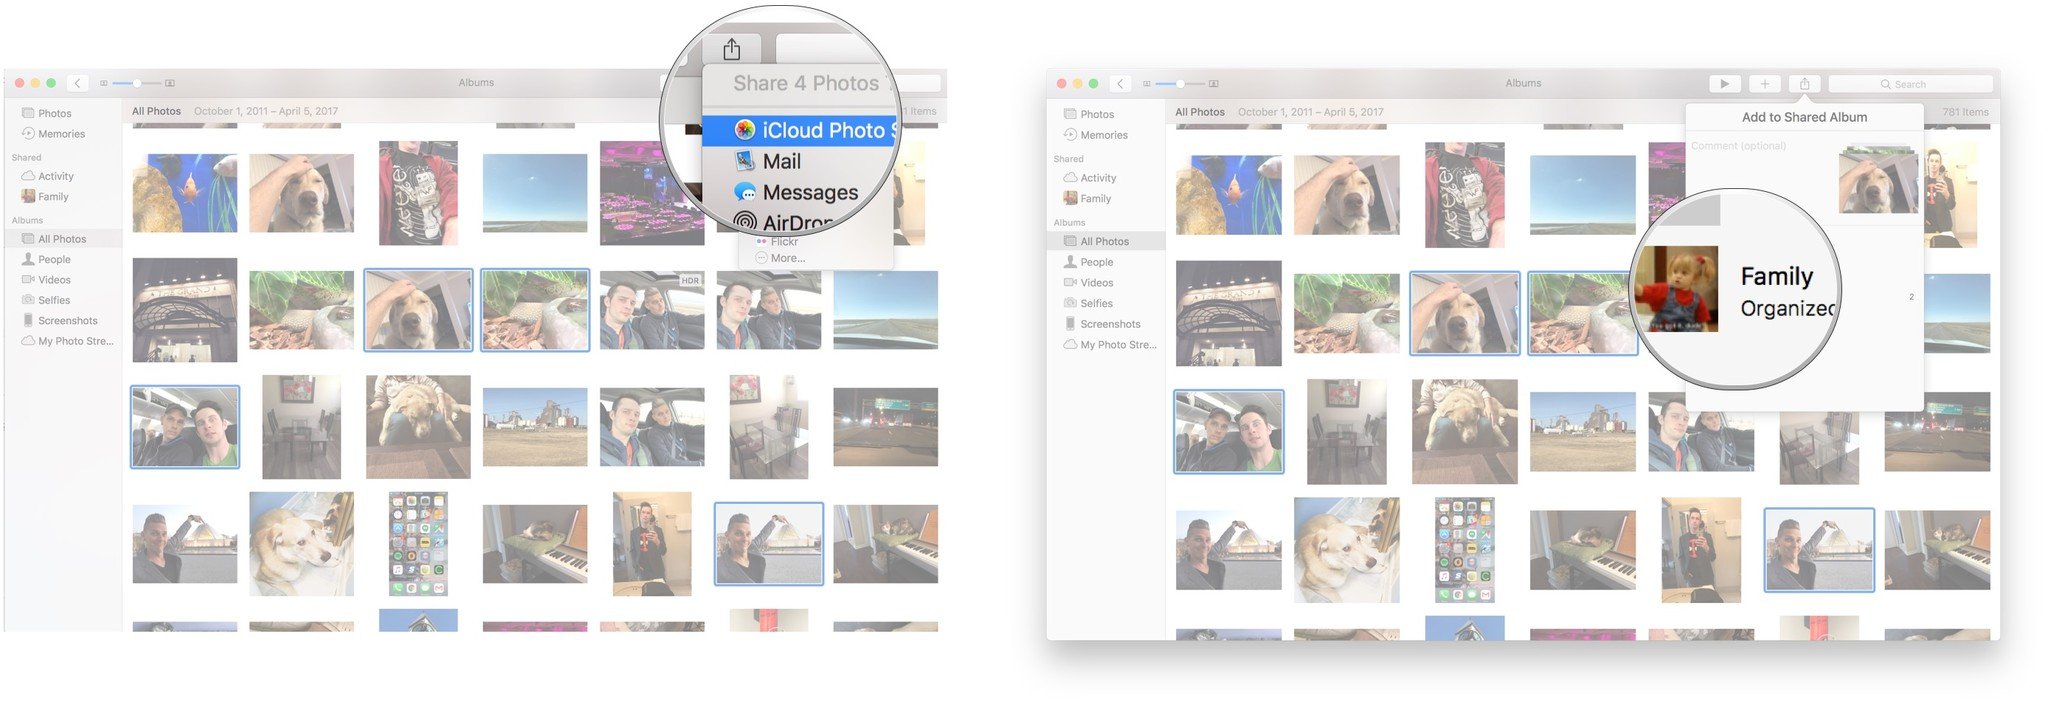 Нажмите кнопку «Поделиться», нажмите «Общий доступ к фотографиям iCloud», нажмите «Семья».